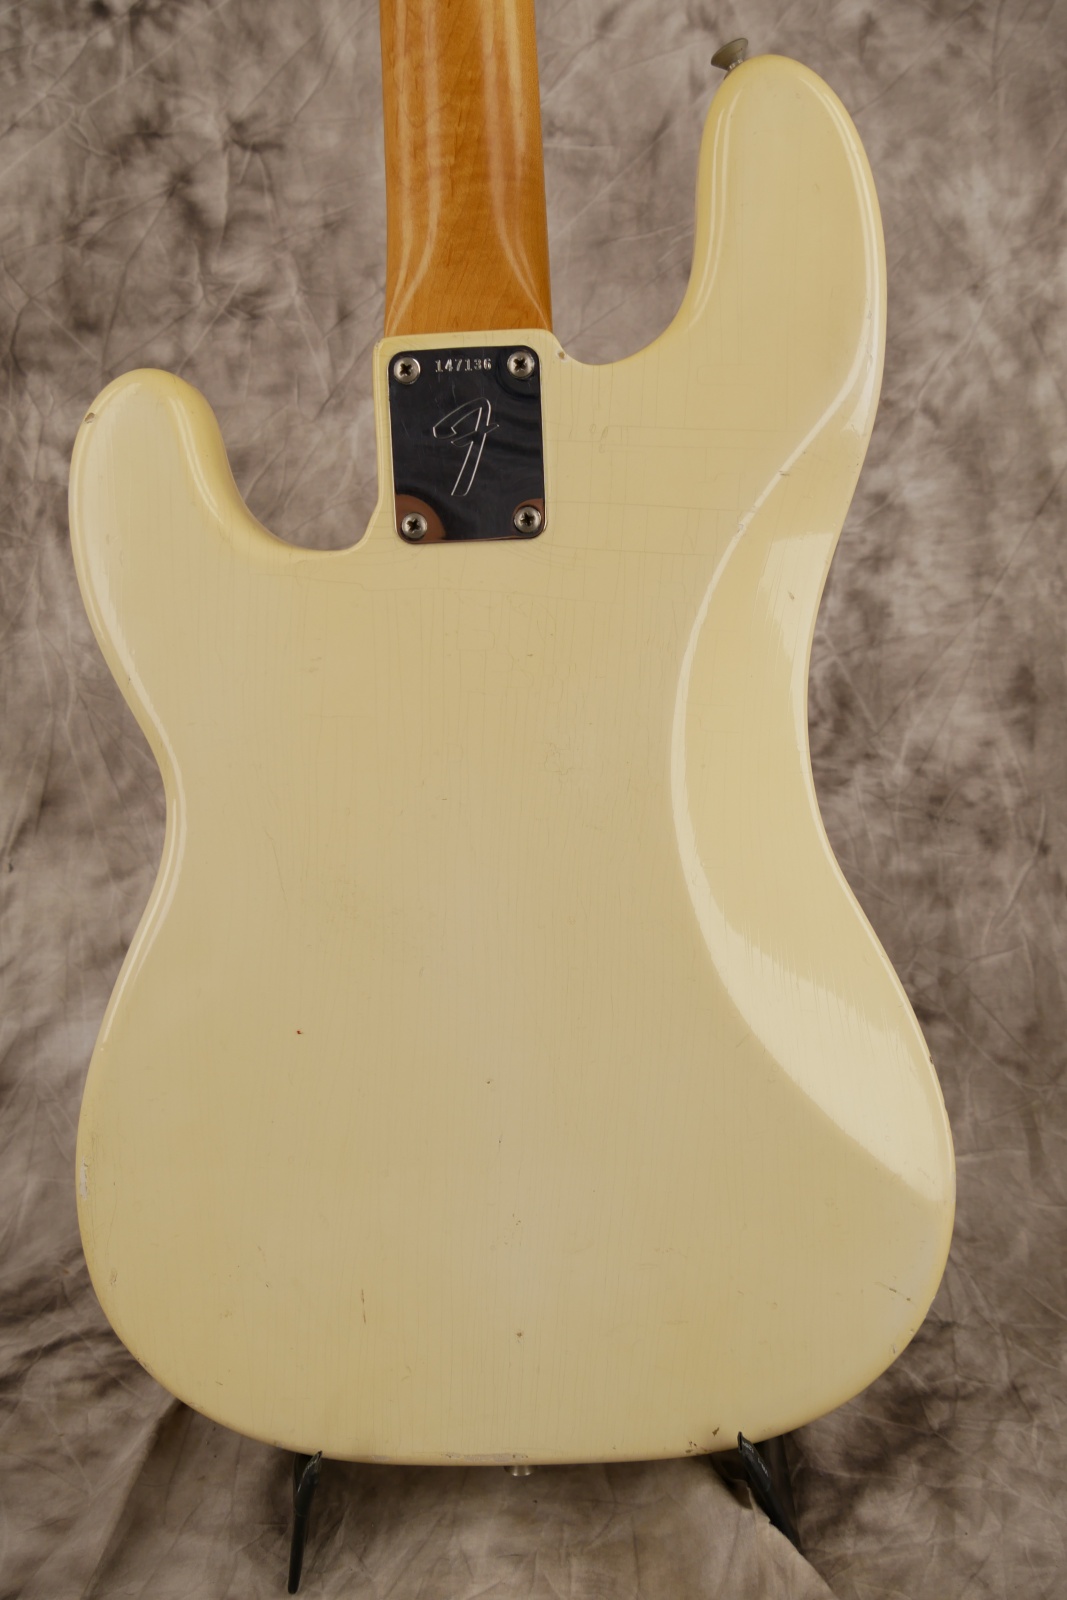 Fender-Precision-Bass-1966-olympic-white-003.JPG